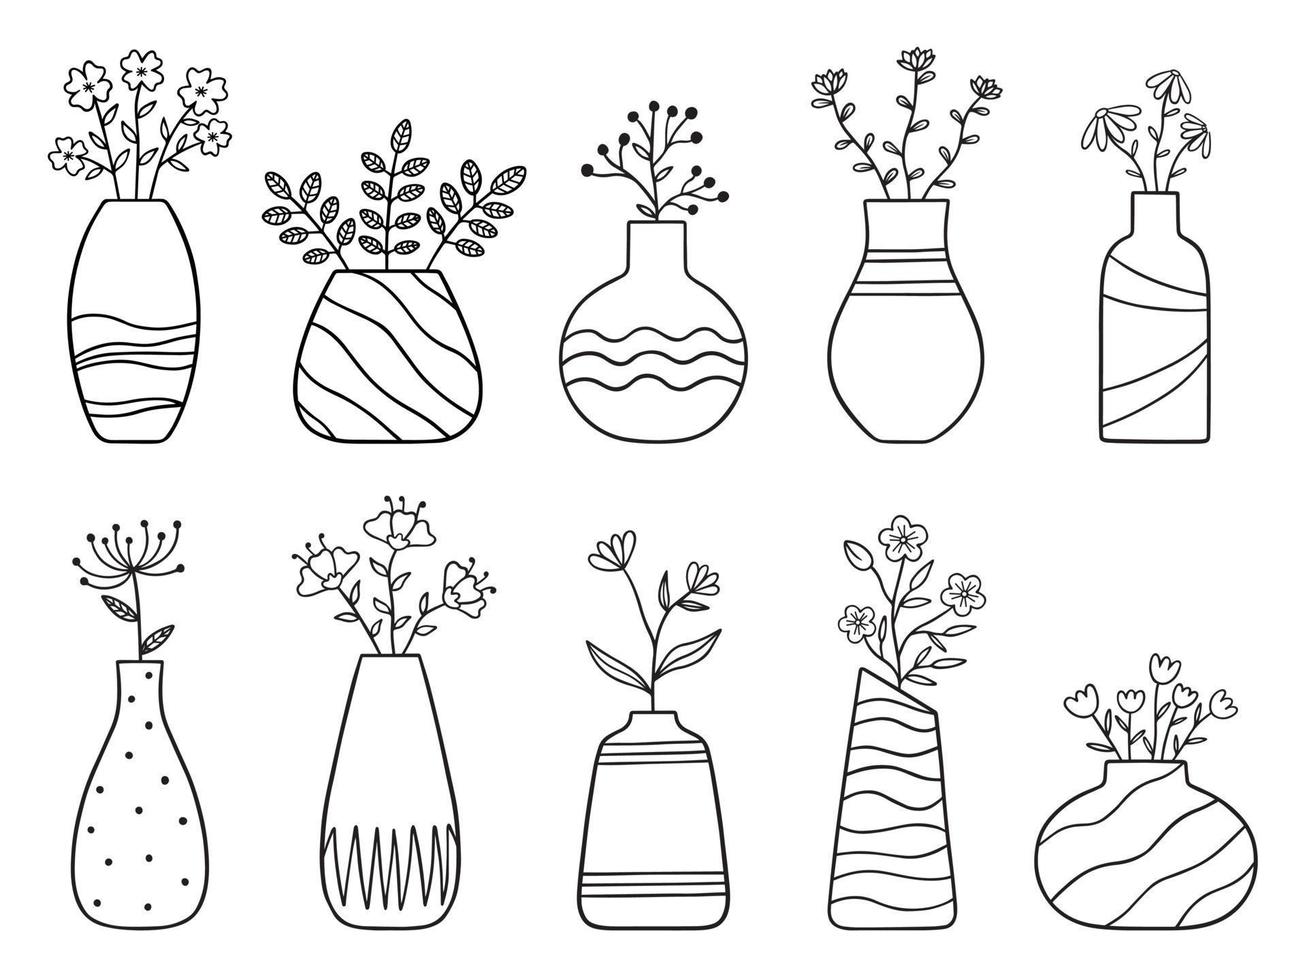 insieme disegnato a mano di fiori e rami in un vaso. scarabocchio. piante domestiche in stile schizzo. illustrazione vettoriale isolato su sfondo bianco.